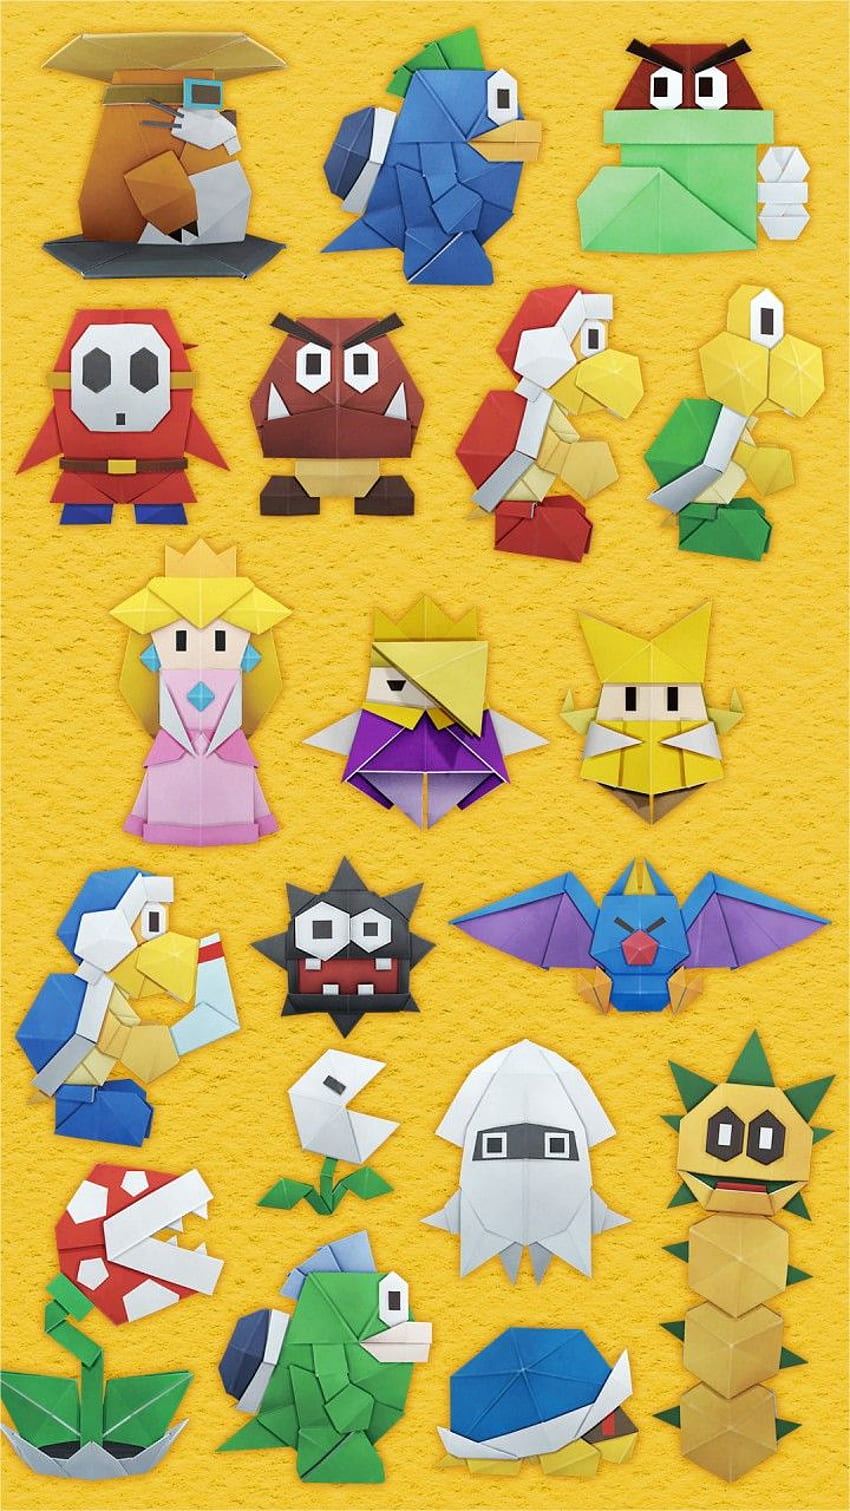 ¡Paper Mario: The Origami King nuevo teléfono de LINE de Nintendo! : NintendoSwitch, Personajes de Mario fondo de pantalla del teléfono